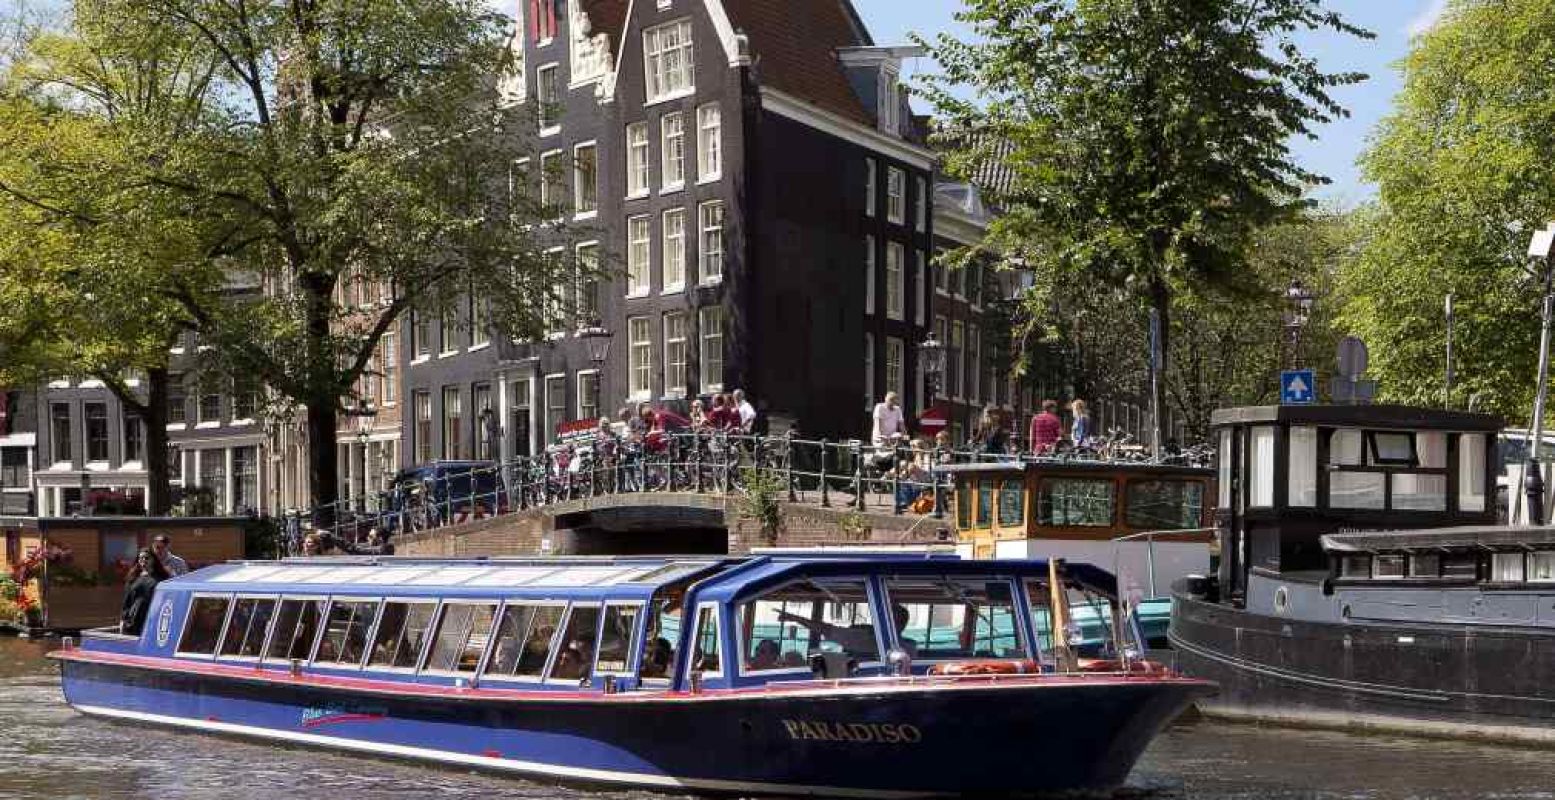 Lekker gratis varen door de Amsterdamse grachten vandaag. Foto: Blue Boat Company.